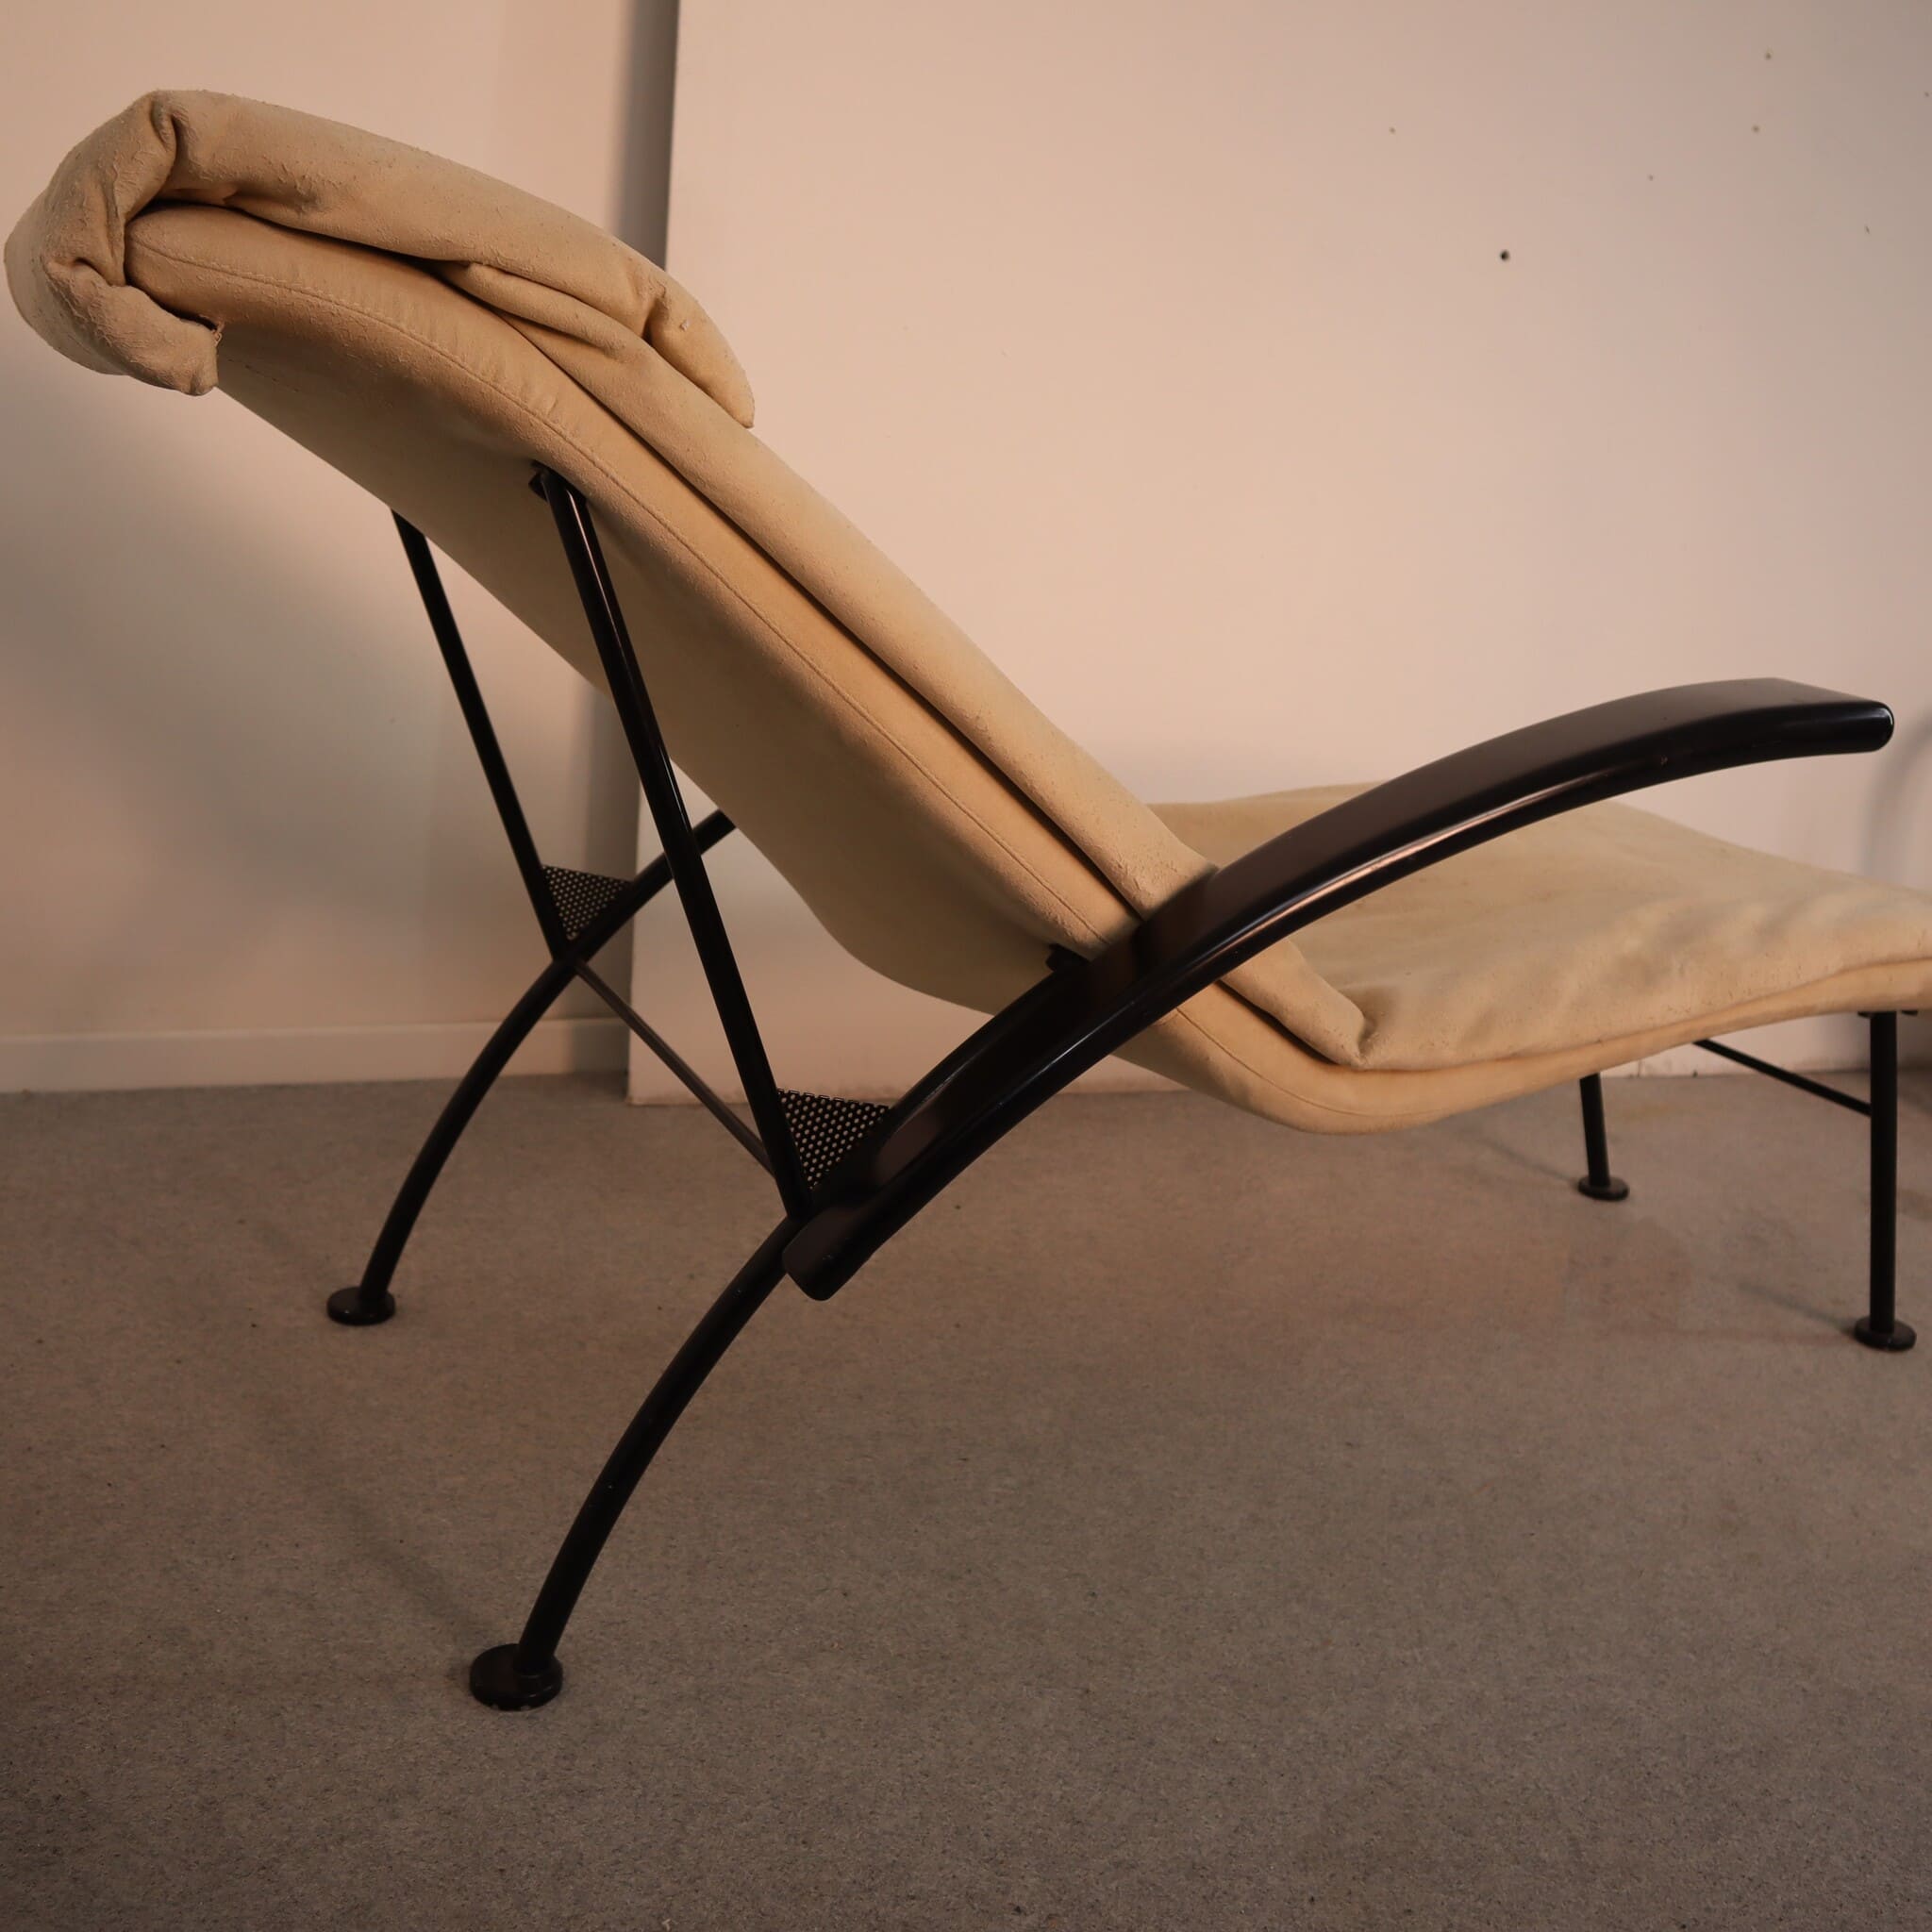 visionidepoca-modernariato-chaise-lounge-in-alcantara-struttura-in-metallo-vista-dettaglio-struttura-posteriore